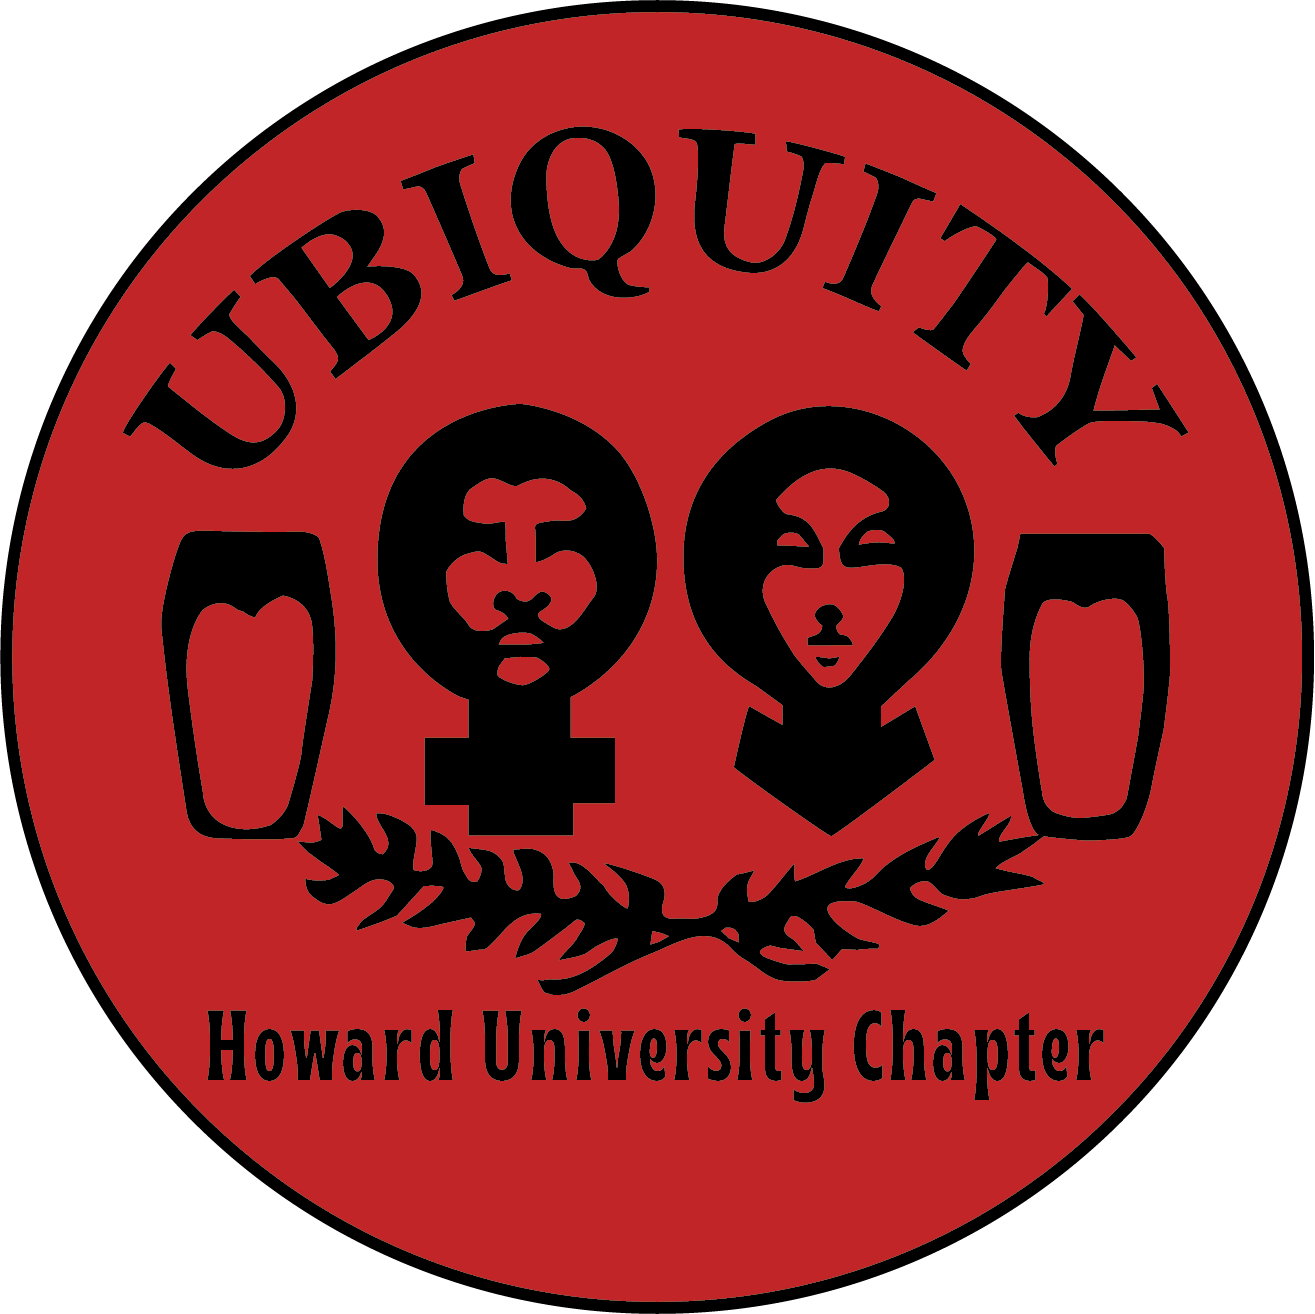 Ubiquity Inc.